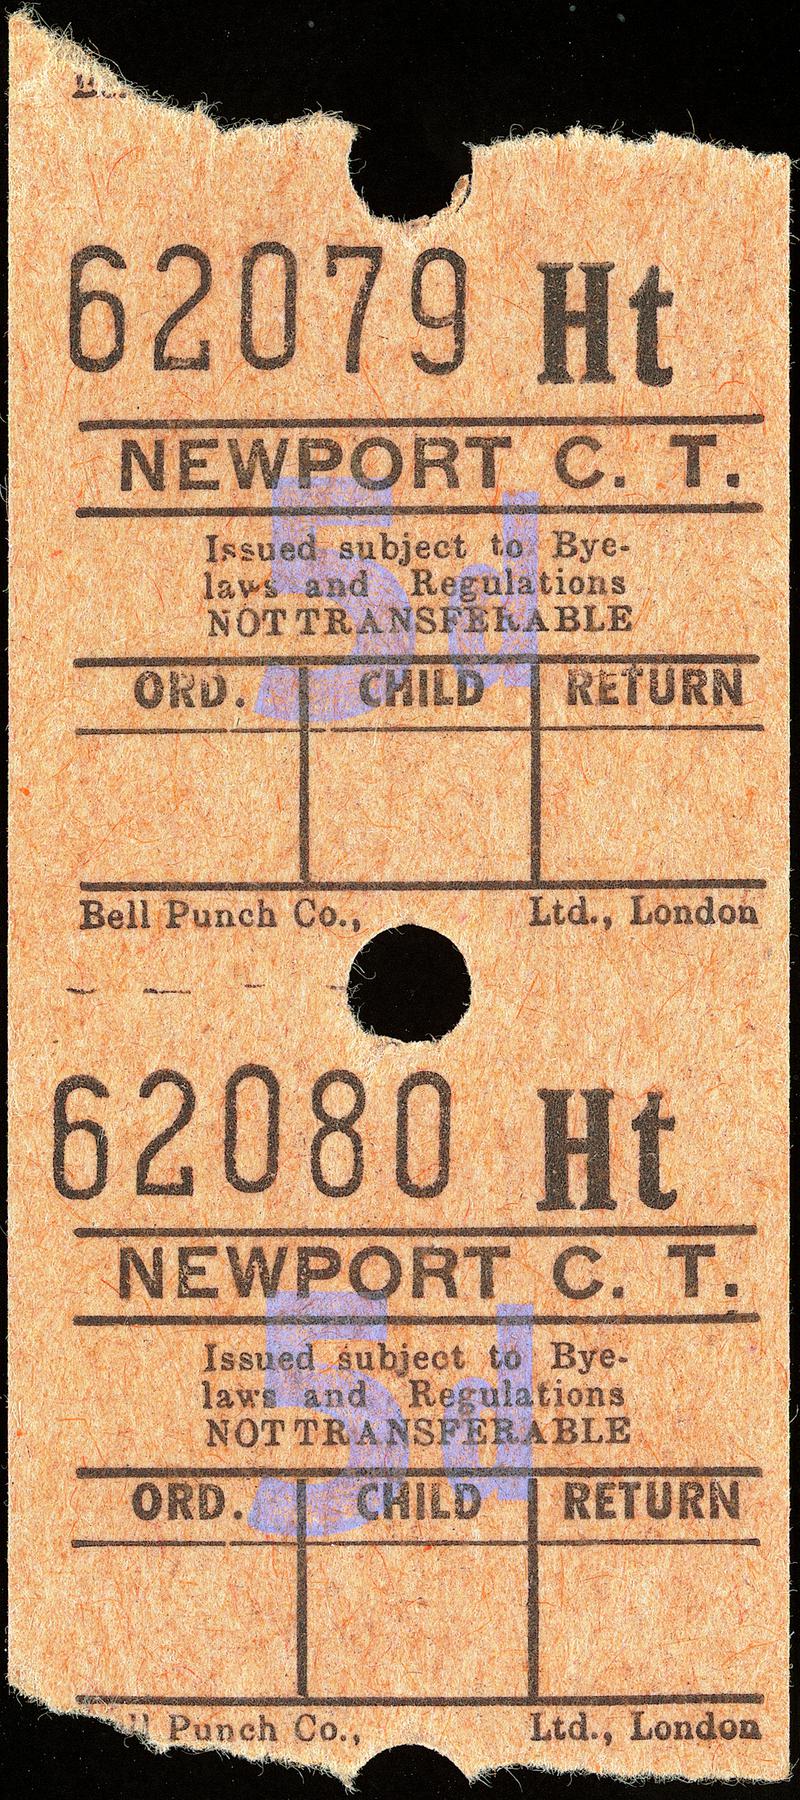 Newport C.T. bus ticket